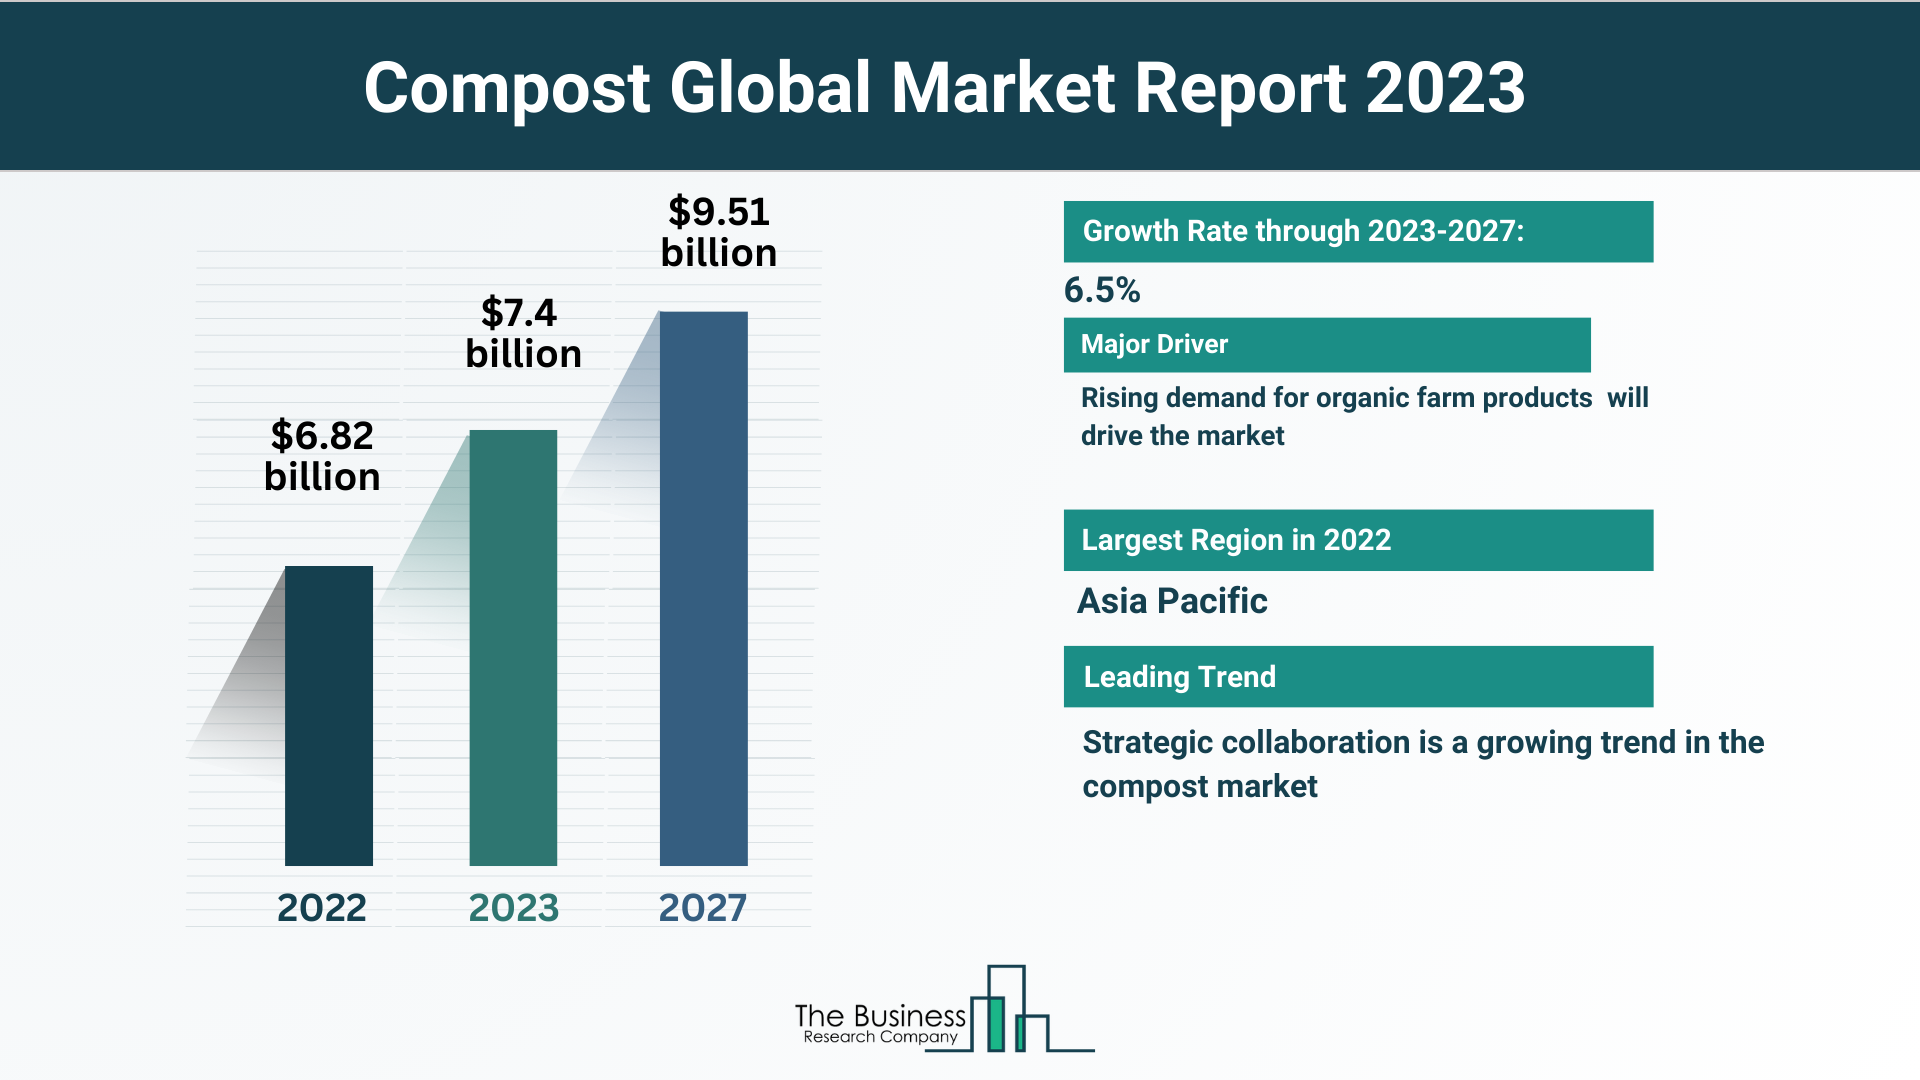 Global Compost Market